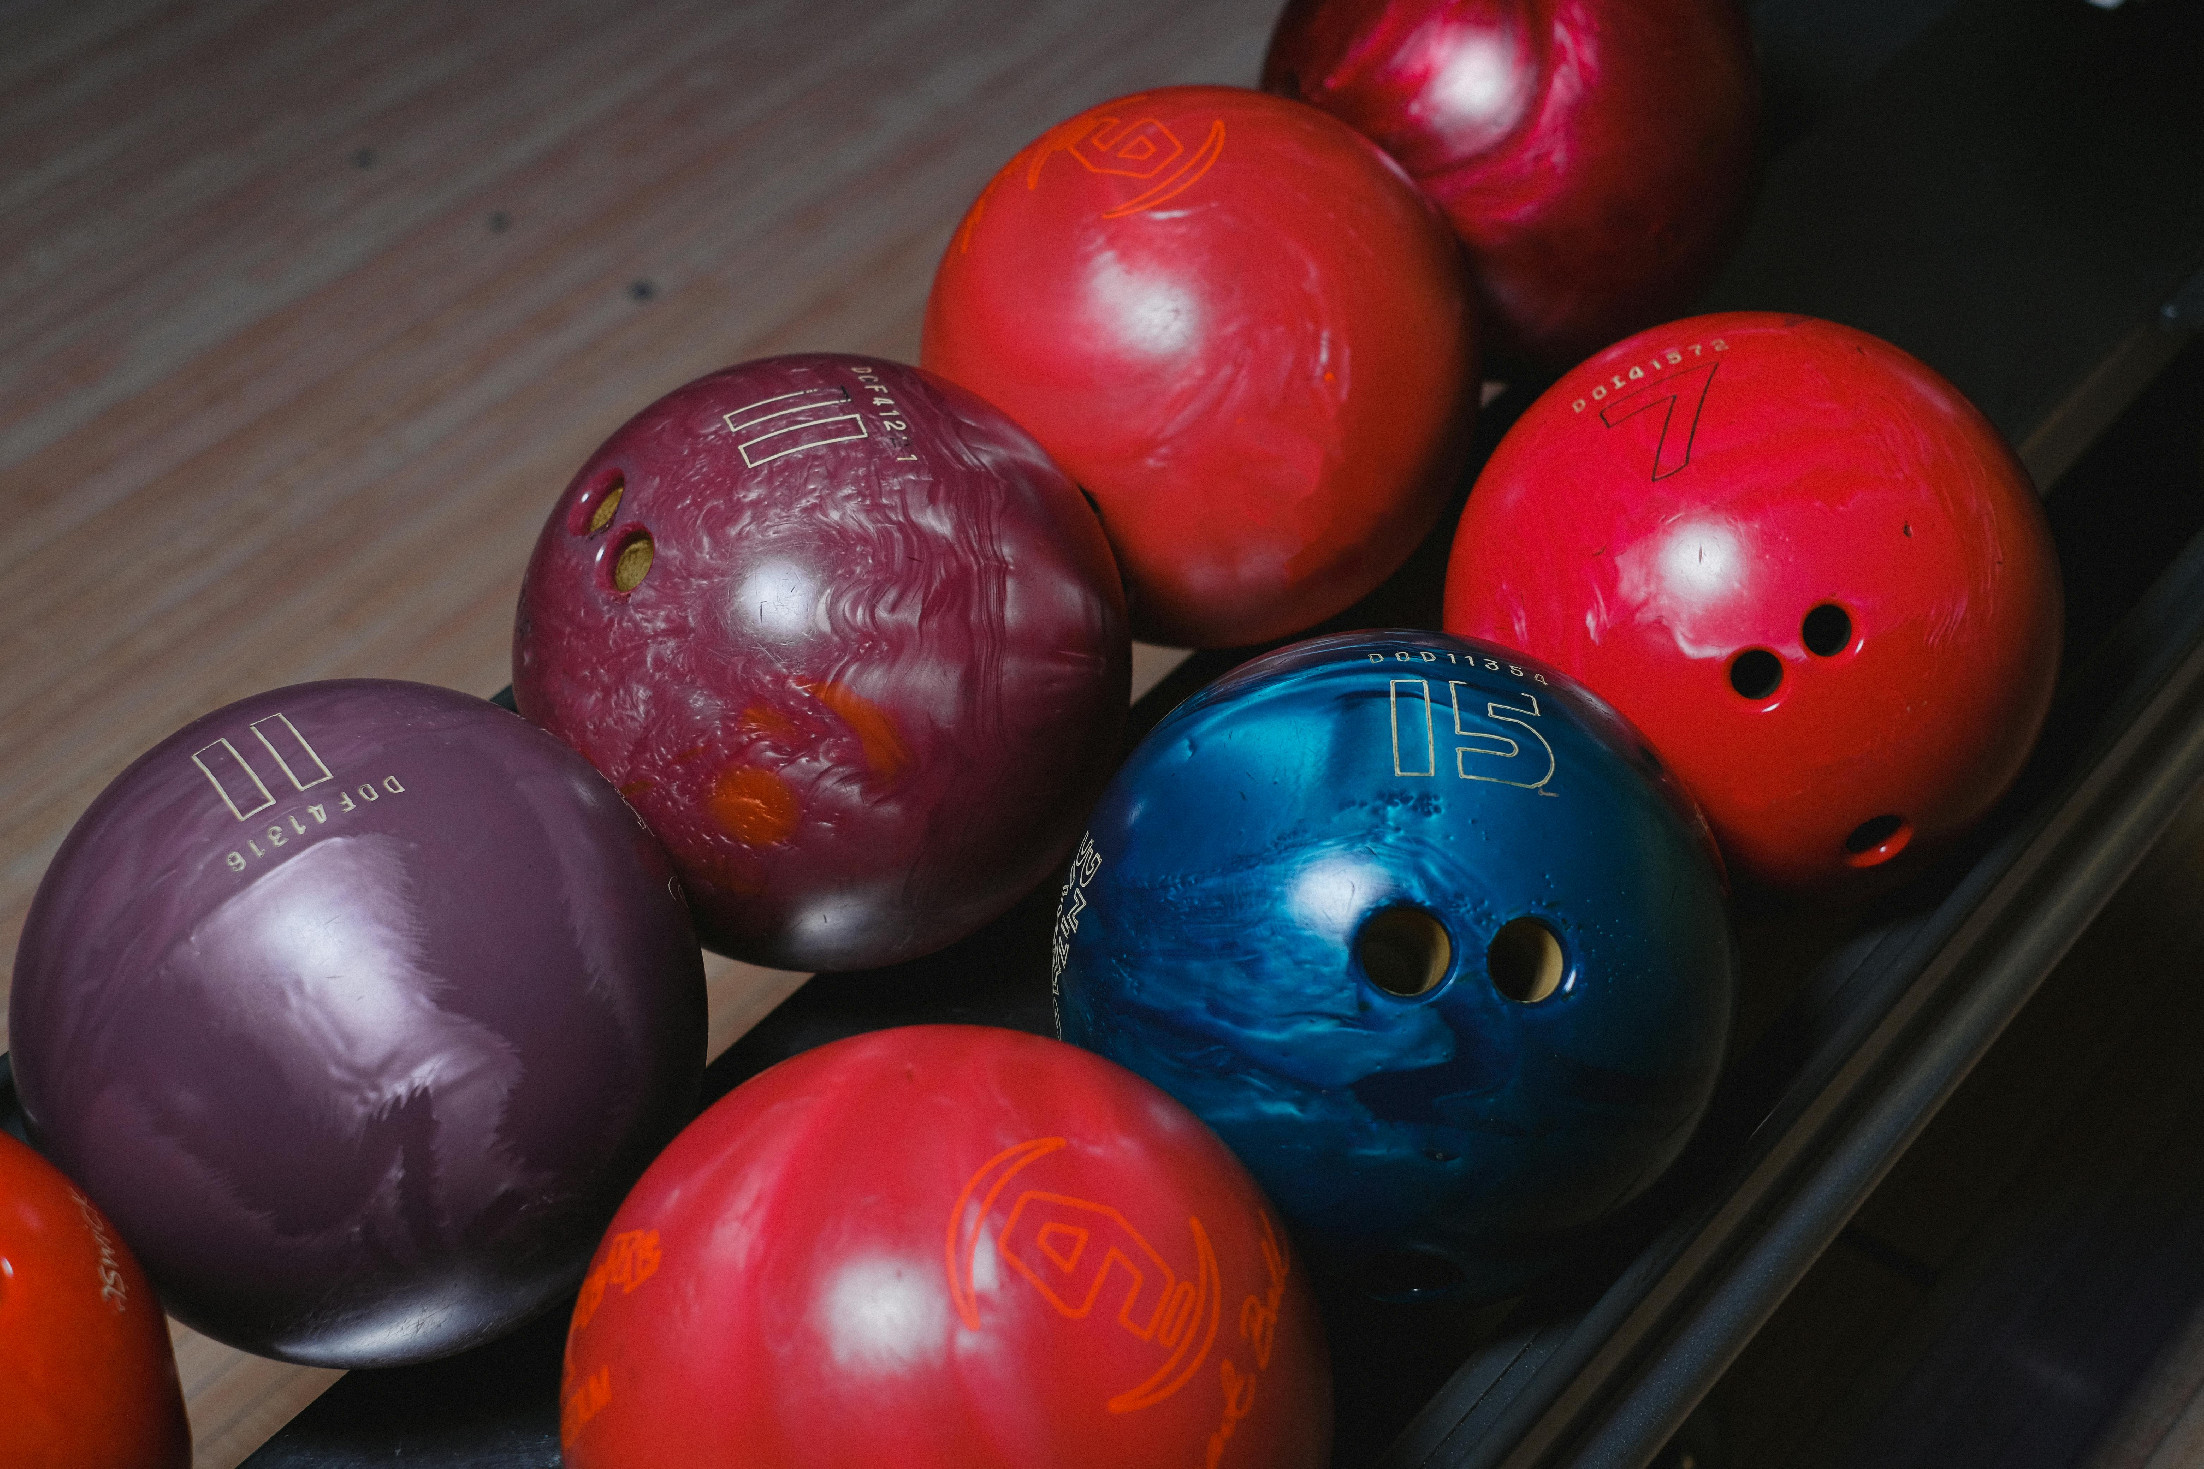 Optikai illúzió: melyik bowlinggolyóval van egy kis probléma? Nem könnyű kiszúrni!